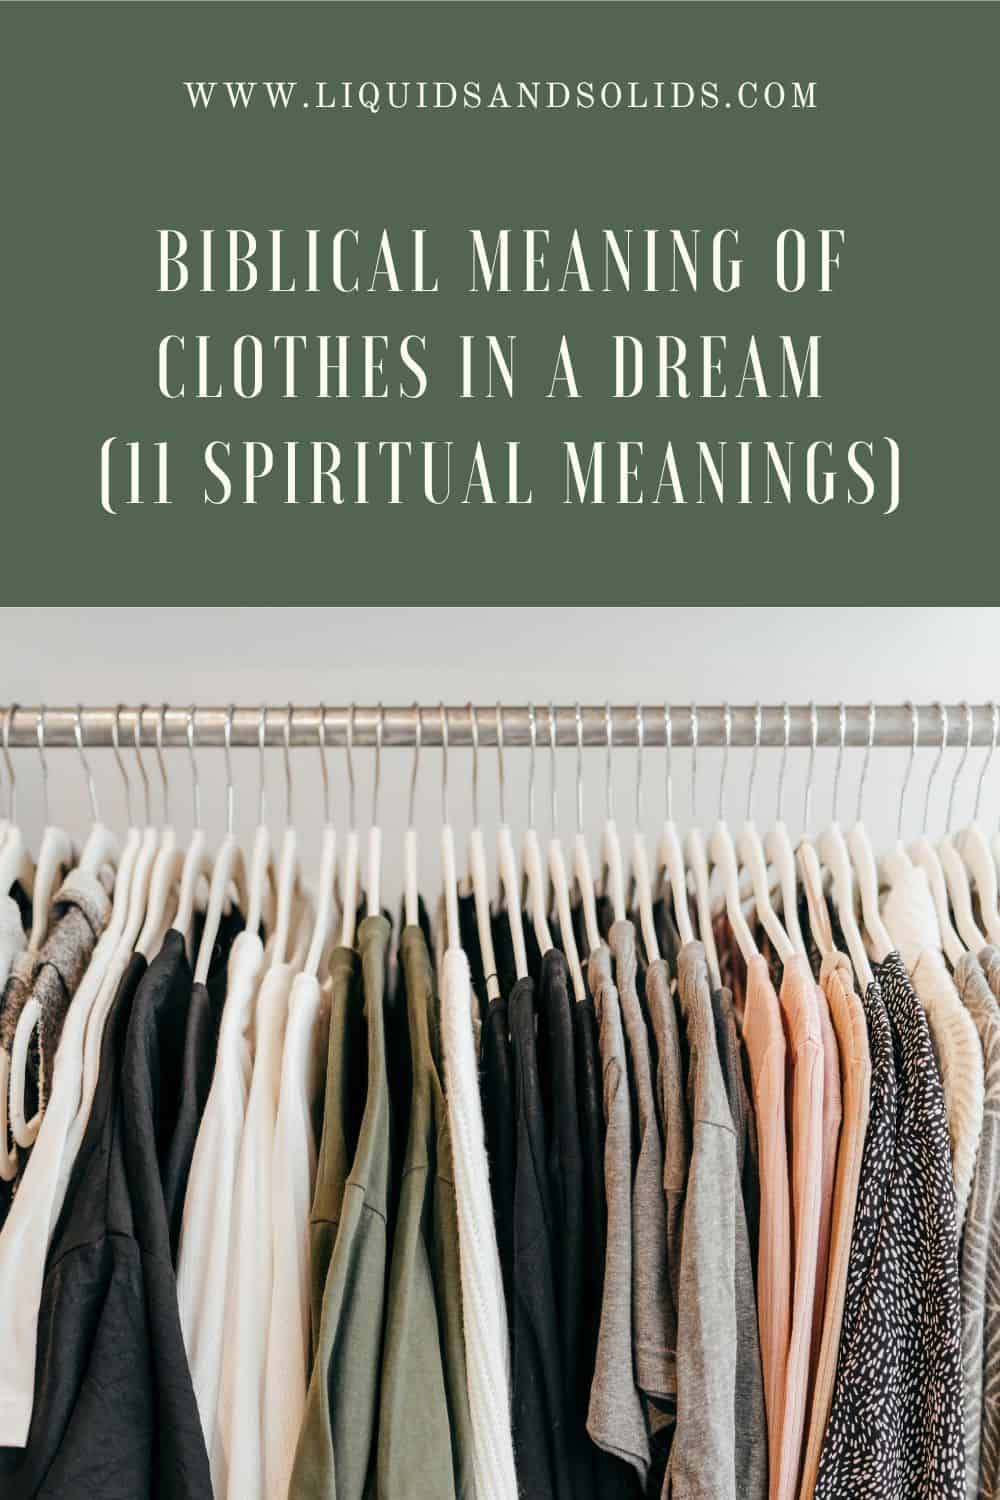  Significado bíblico da roupa nun soño (11 significados espirituais)